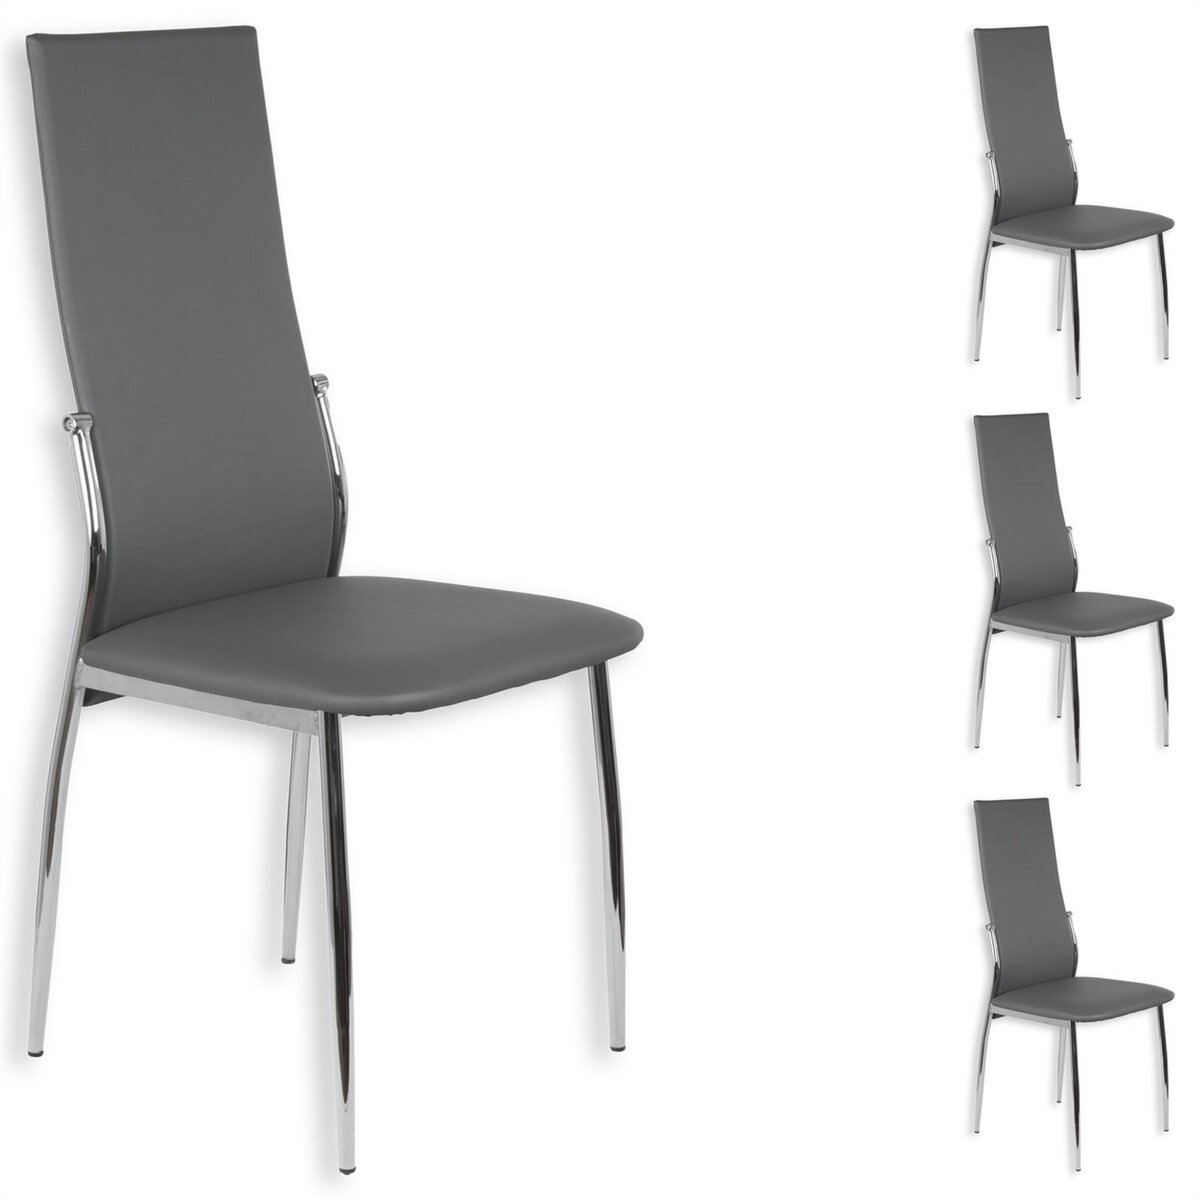 IDIMEX Lot de 4 chaises de salle à manger DORIS piètement chromé revêtement synthétique gris